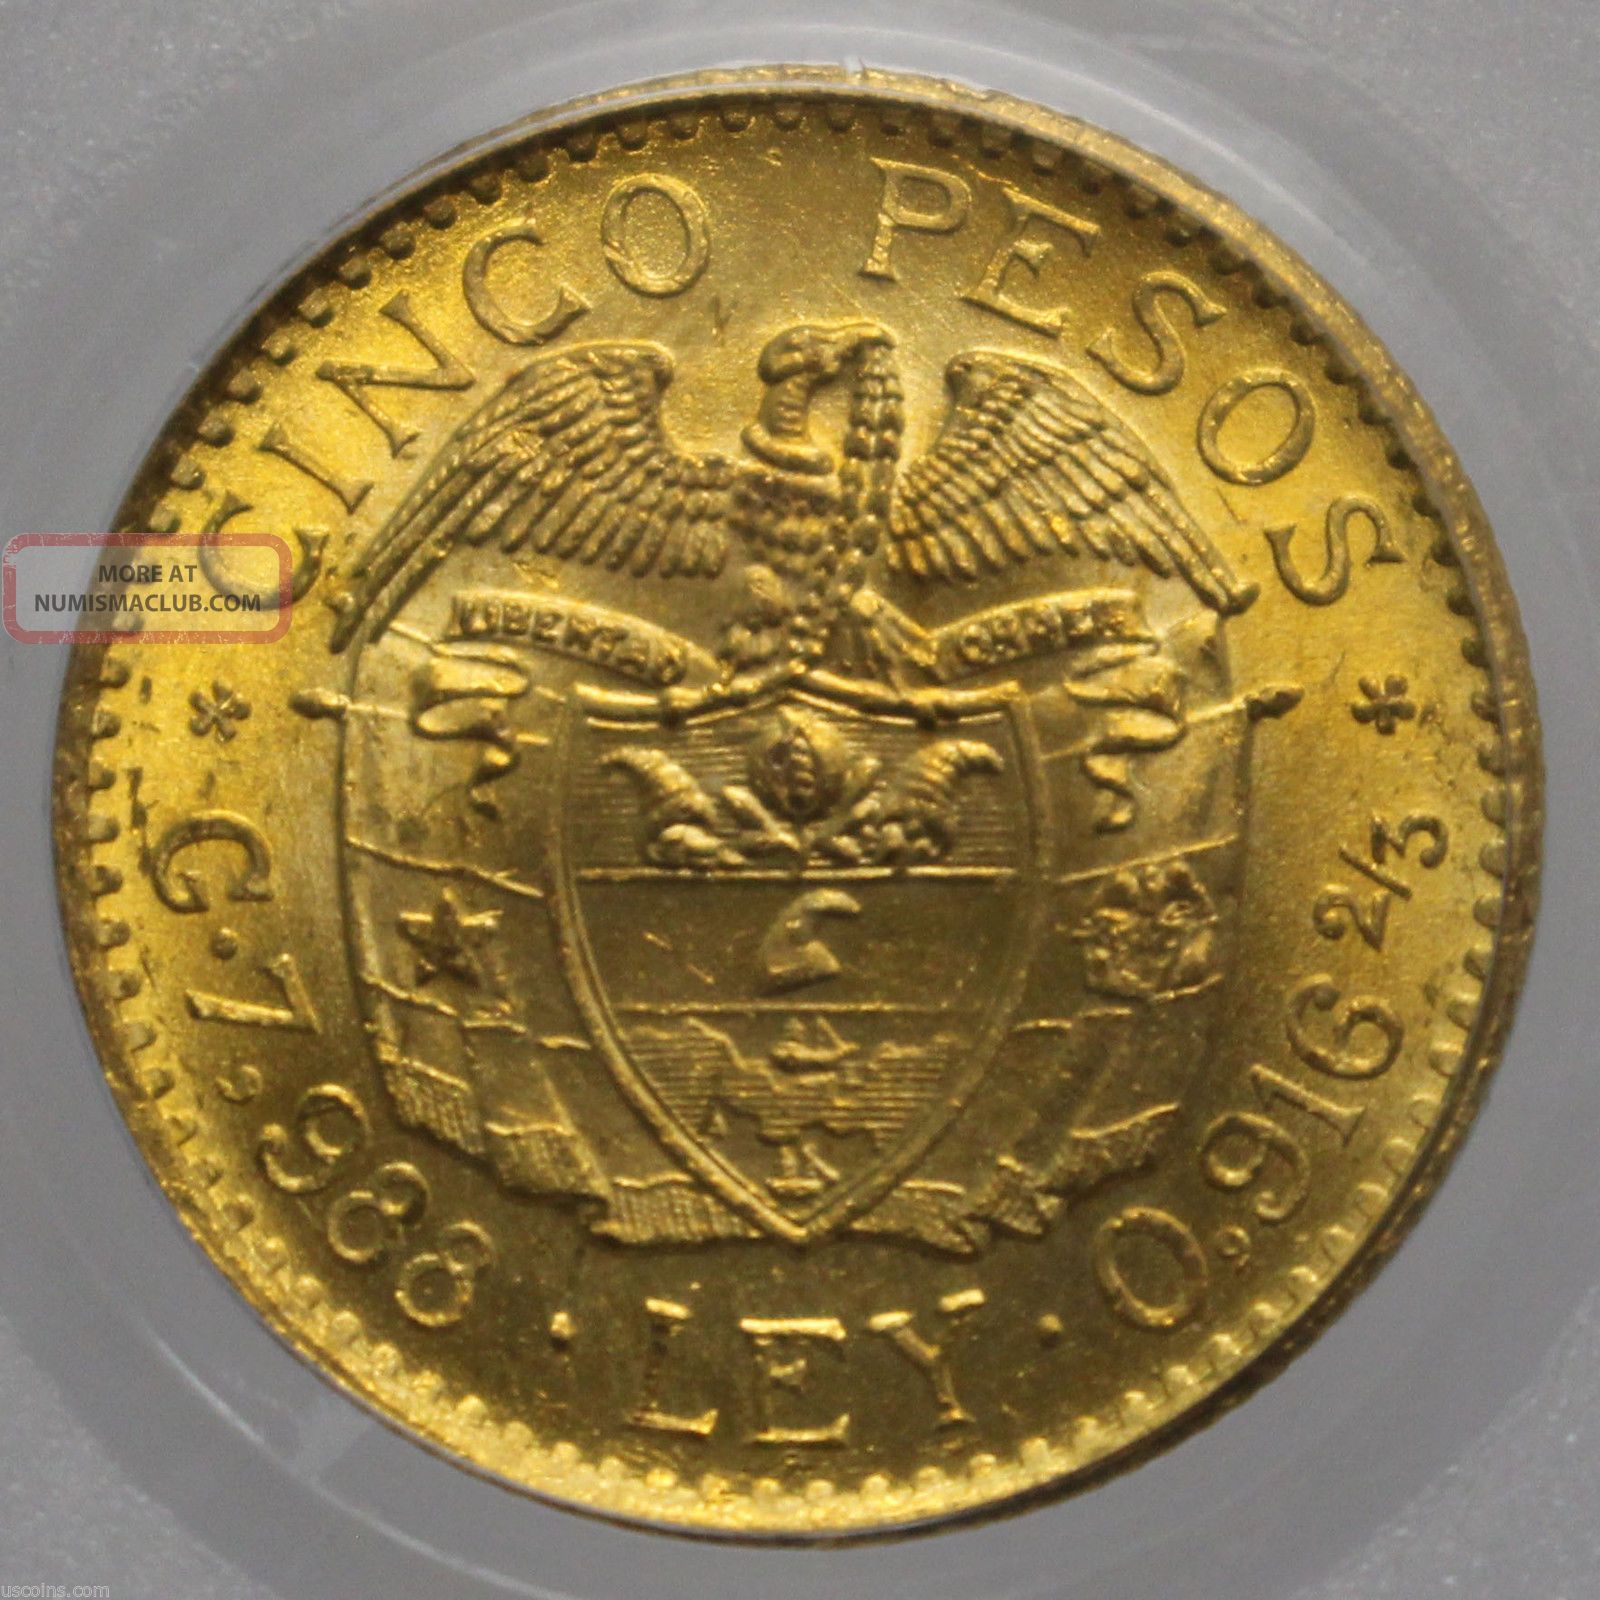 1925 Colombia Gold 5 Peso Simon Bolivar Medellin Km 204 Pcgs Ms 64 0925583b